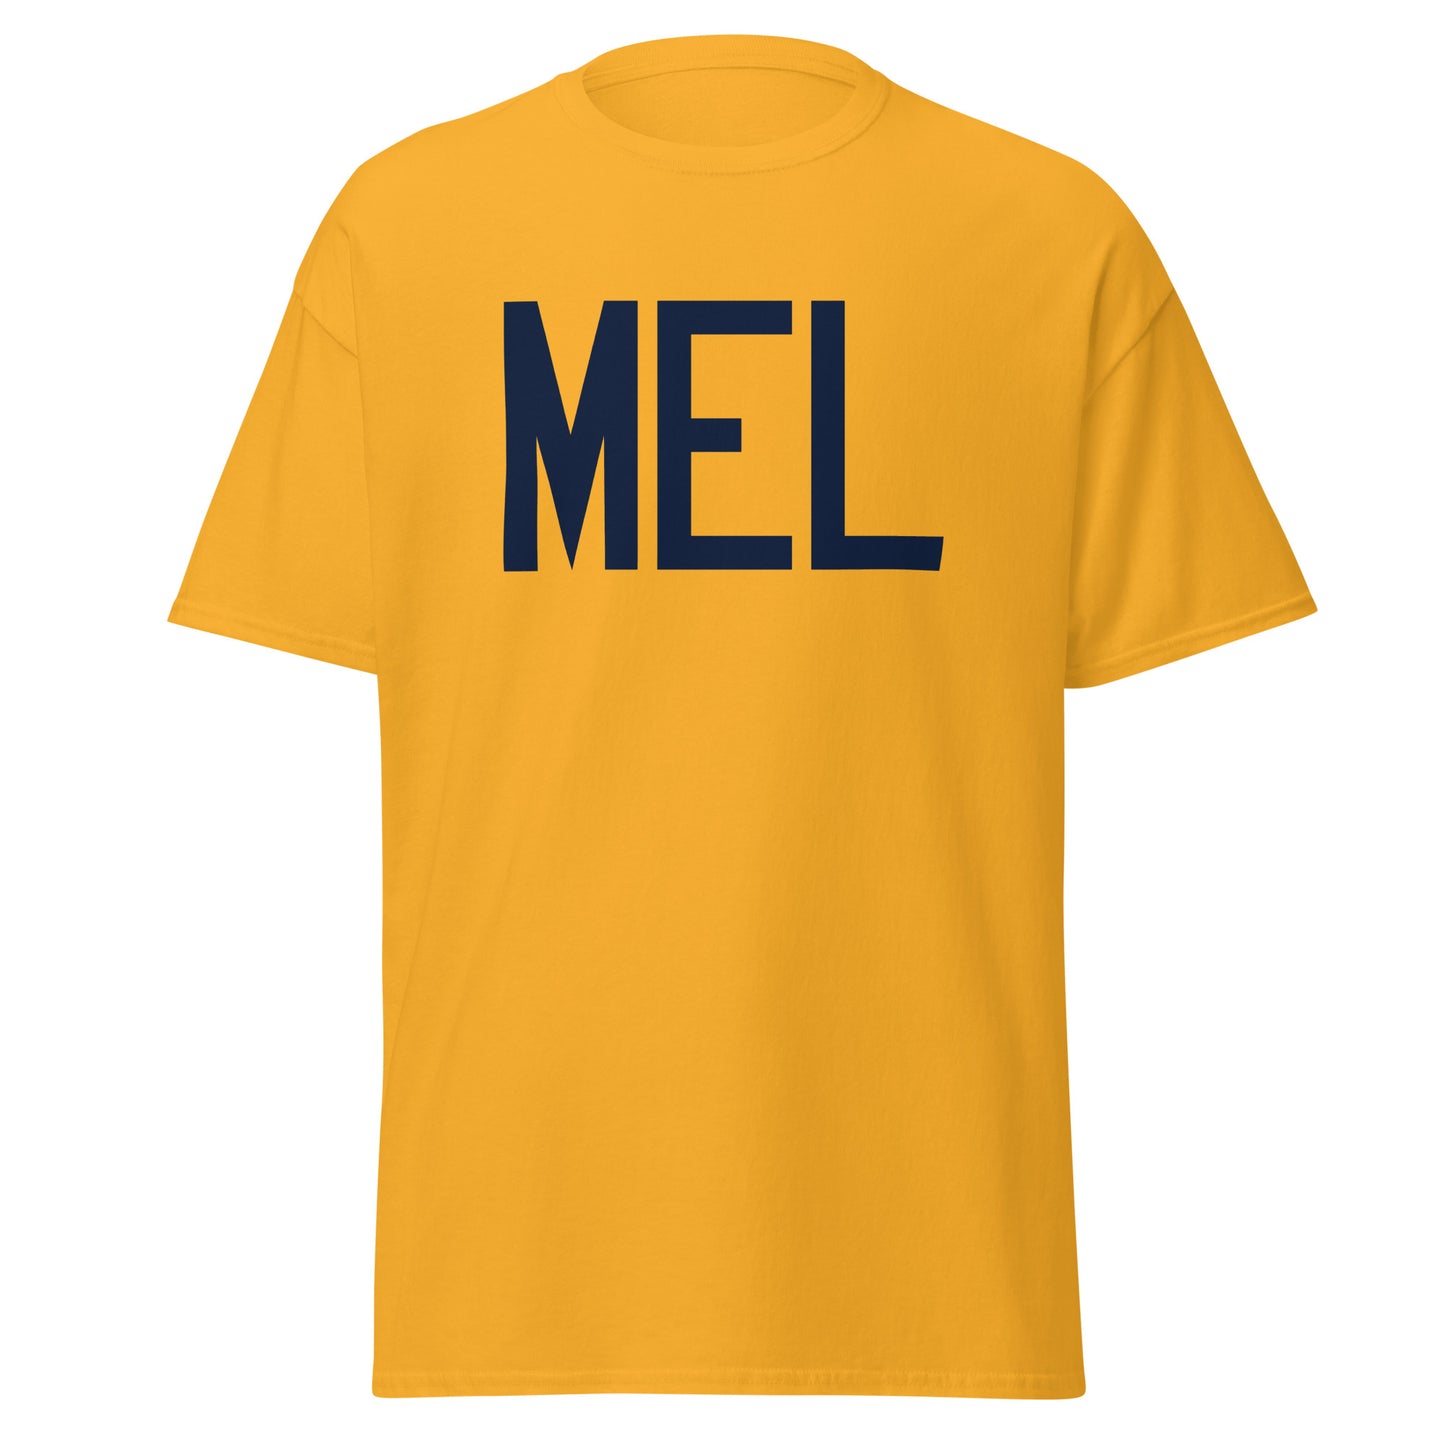 Aviation-Theme Men's T-Shirt - Navy Blue Graphic • MEL Melbourne • YHM Designs - Image 05